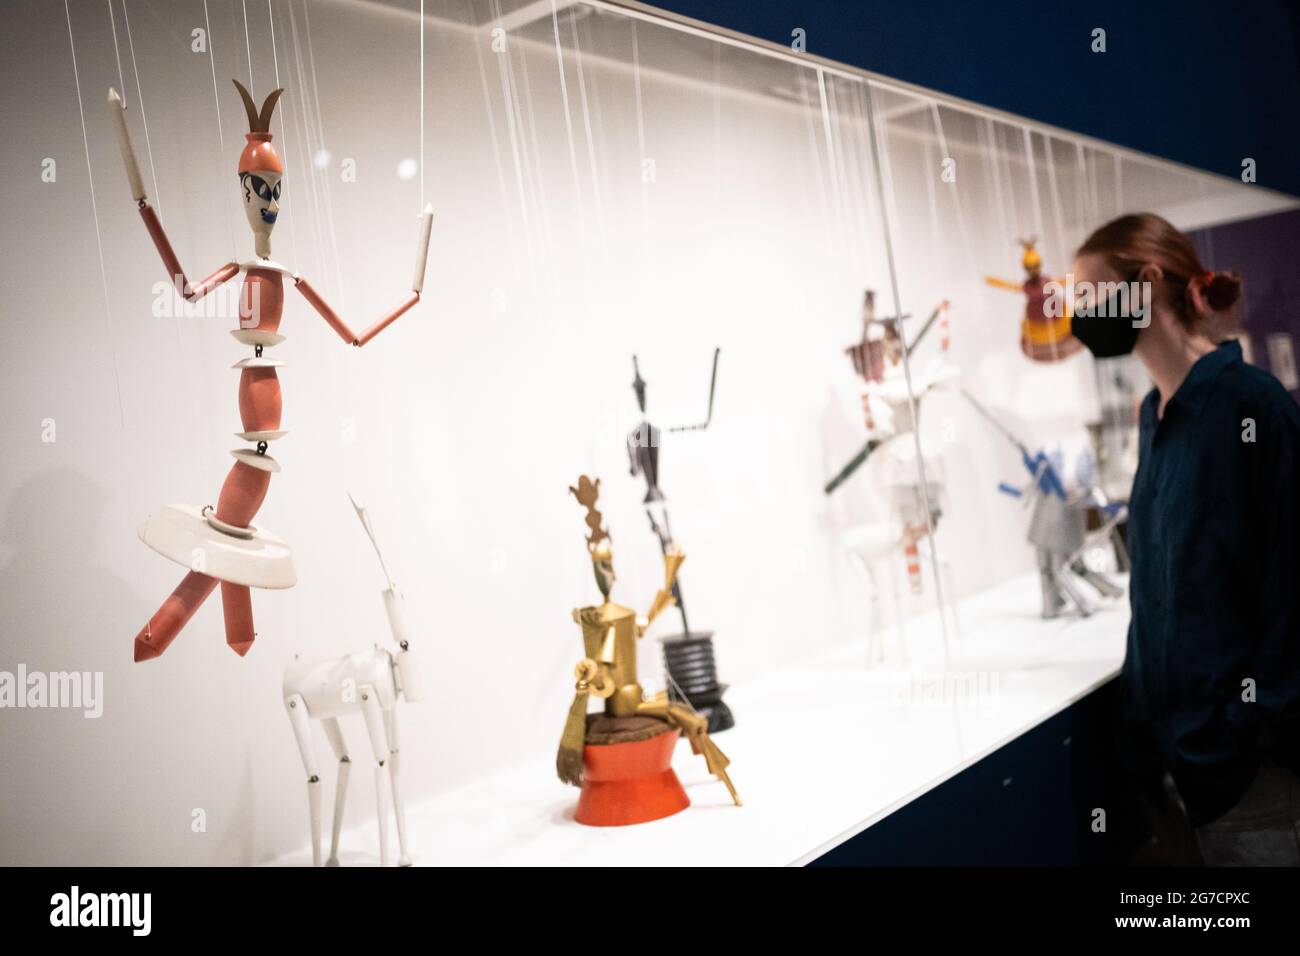 Une personne voit 17 marionnettes à cordes Dada Marionettes King Stag de Sophie Taeuber-ARP exposées lors d'un appel photo pour la nouvelle exposition Sophie Taeuber-ARP au Tate Modern de Londres. Date de la photo: Mardi 13 juillet 2021. Banque D'Images